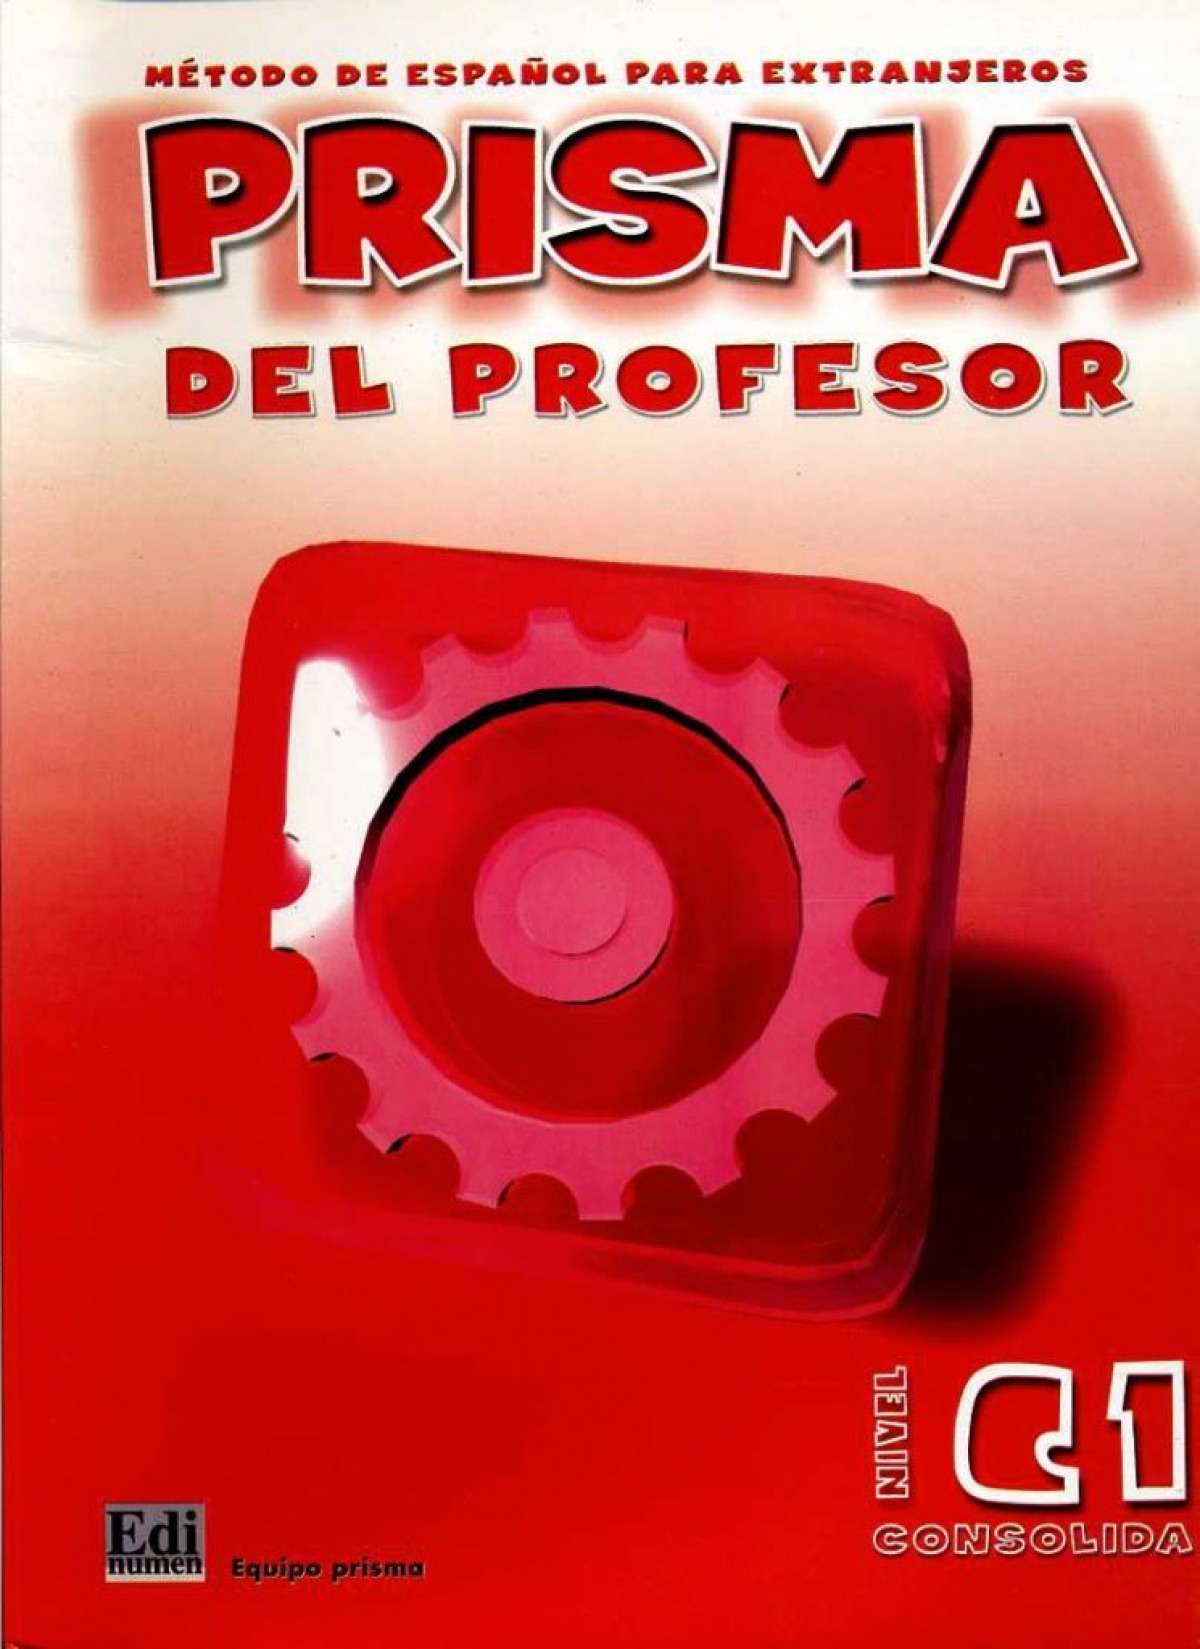 Prisma, método de español, nivel C1, consolida. Libro del profesor - Gelabert Navarro, María José